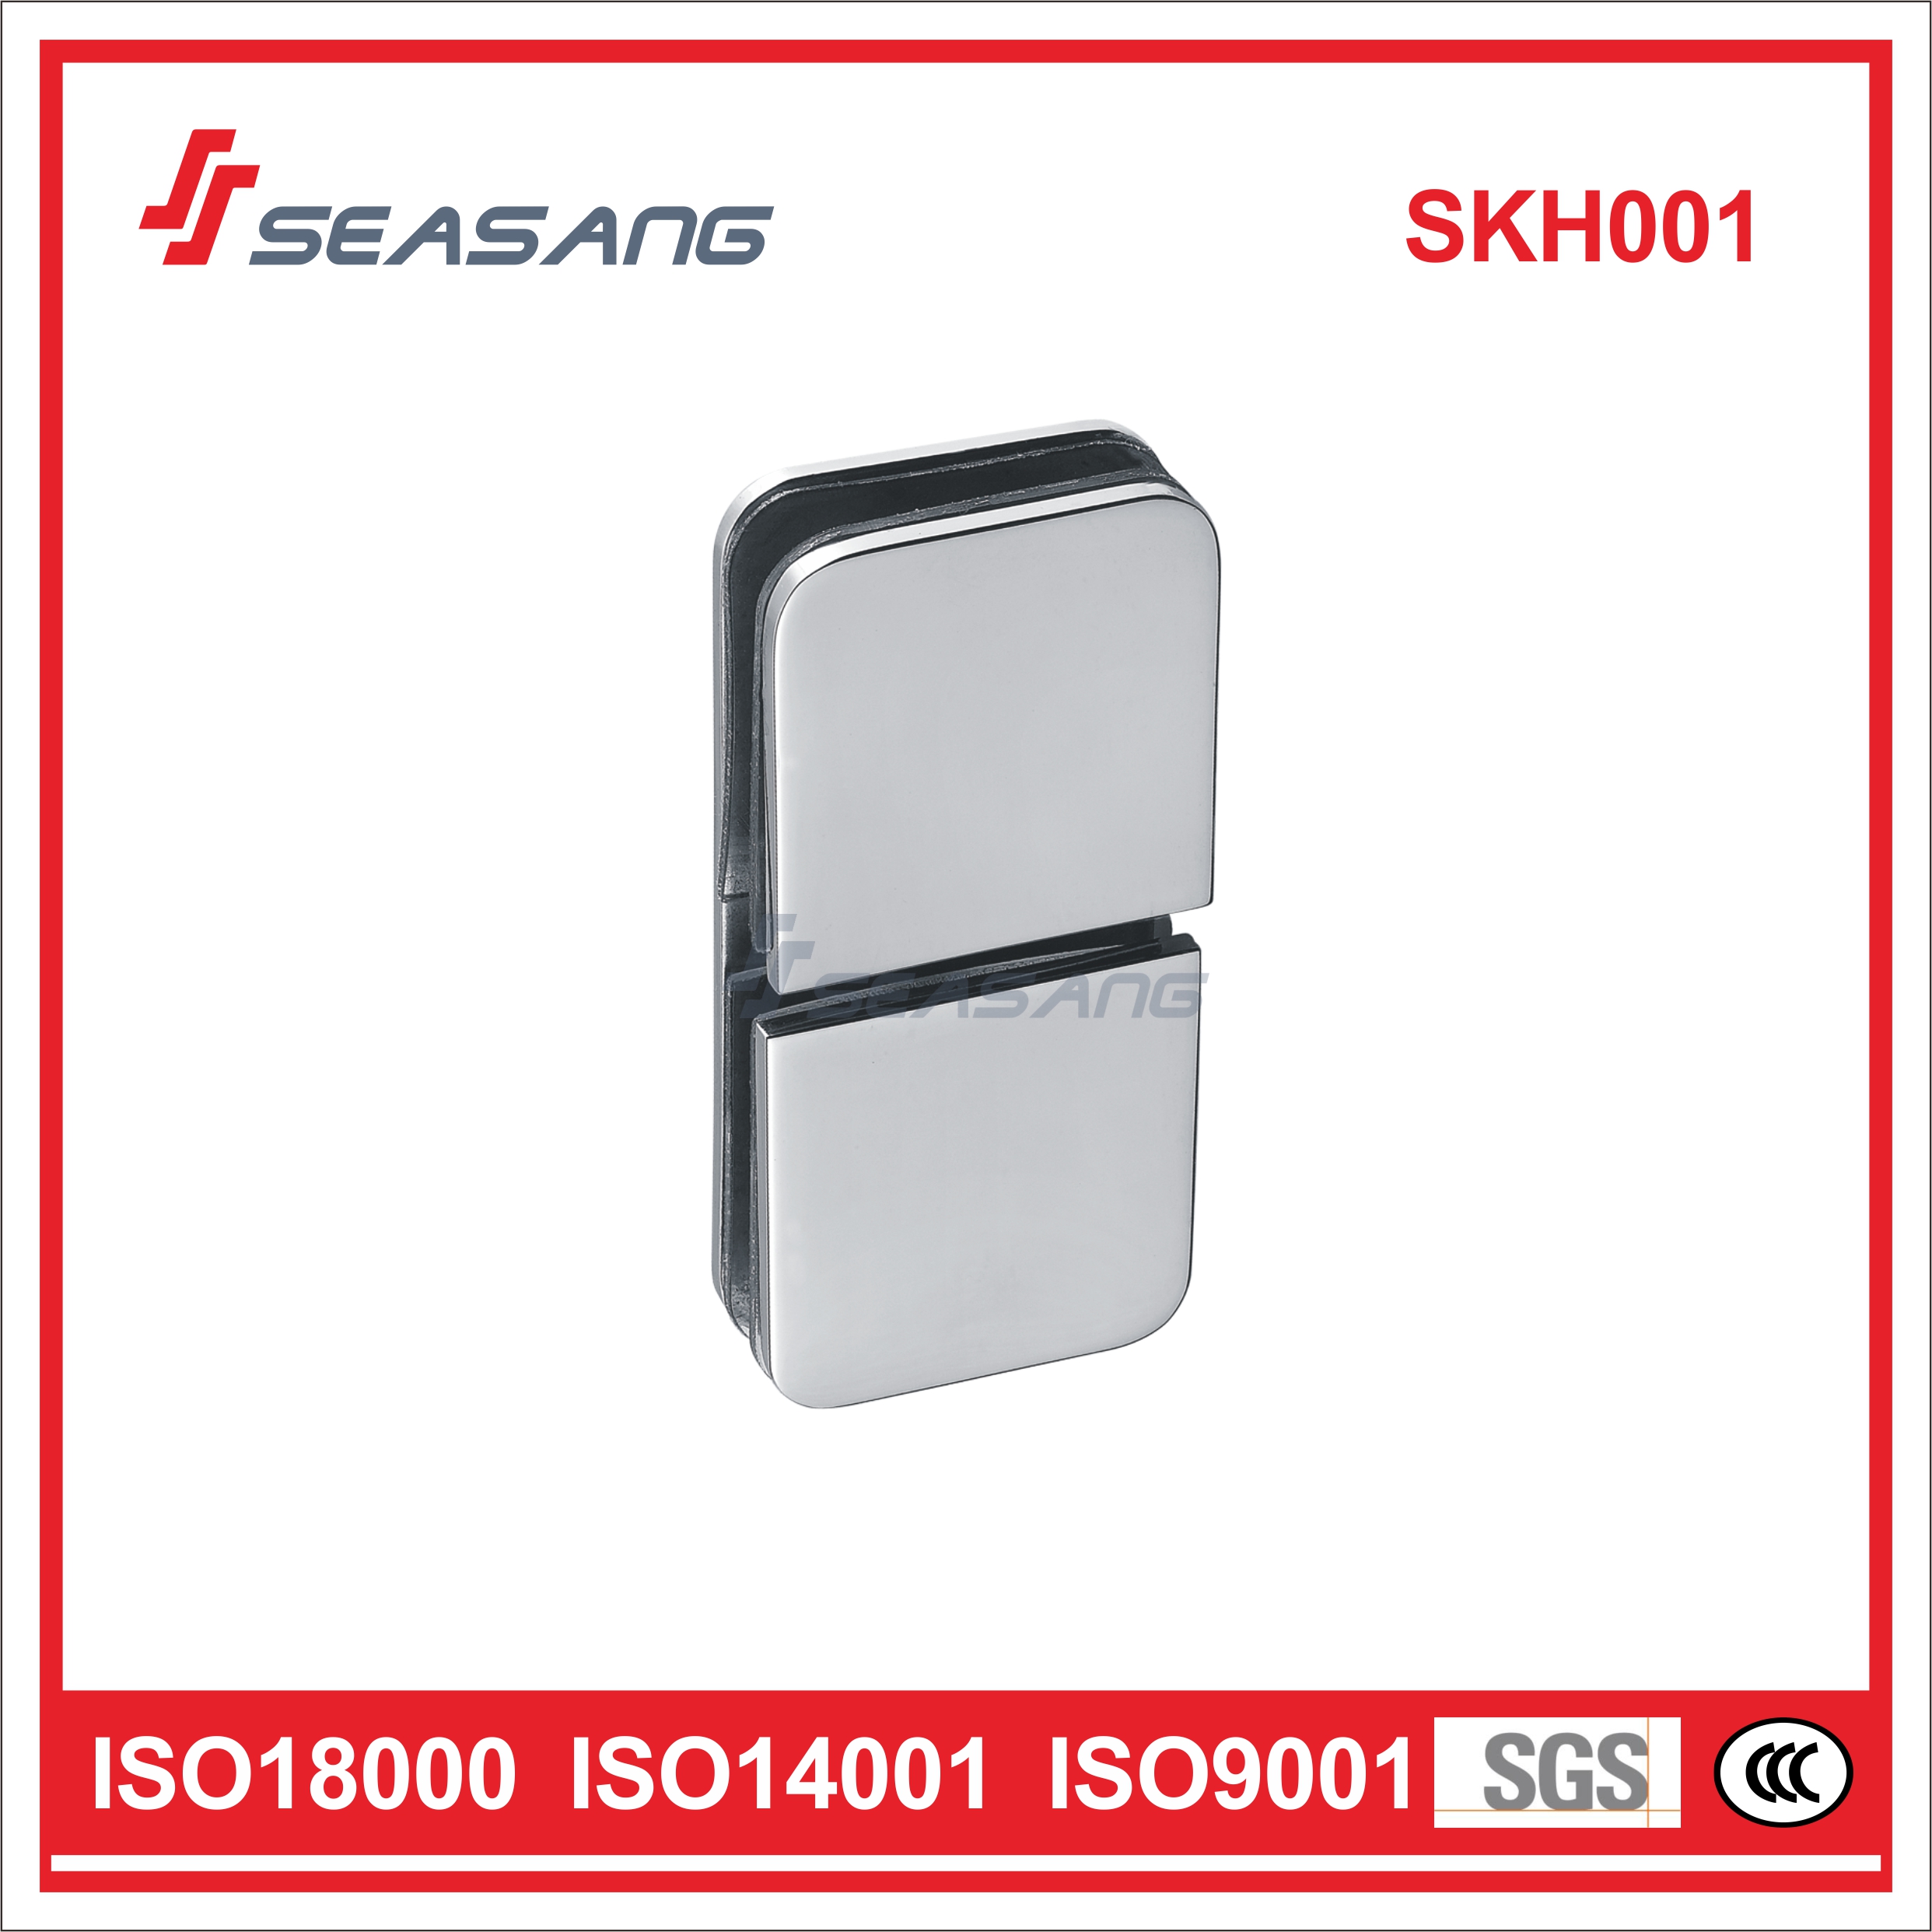 Conector de la puerta de la ducha del baño del baño del acero inoxidable SKH001